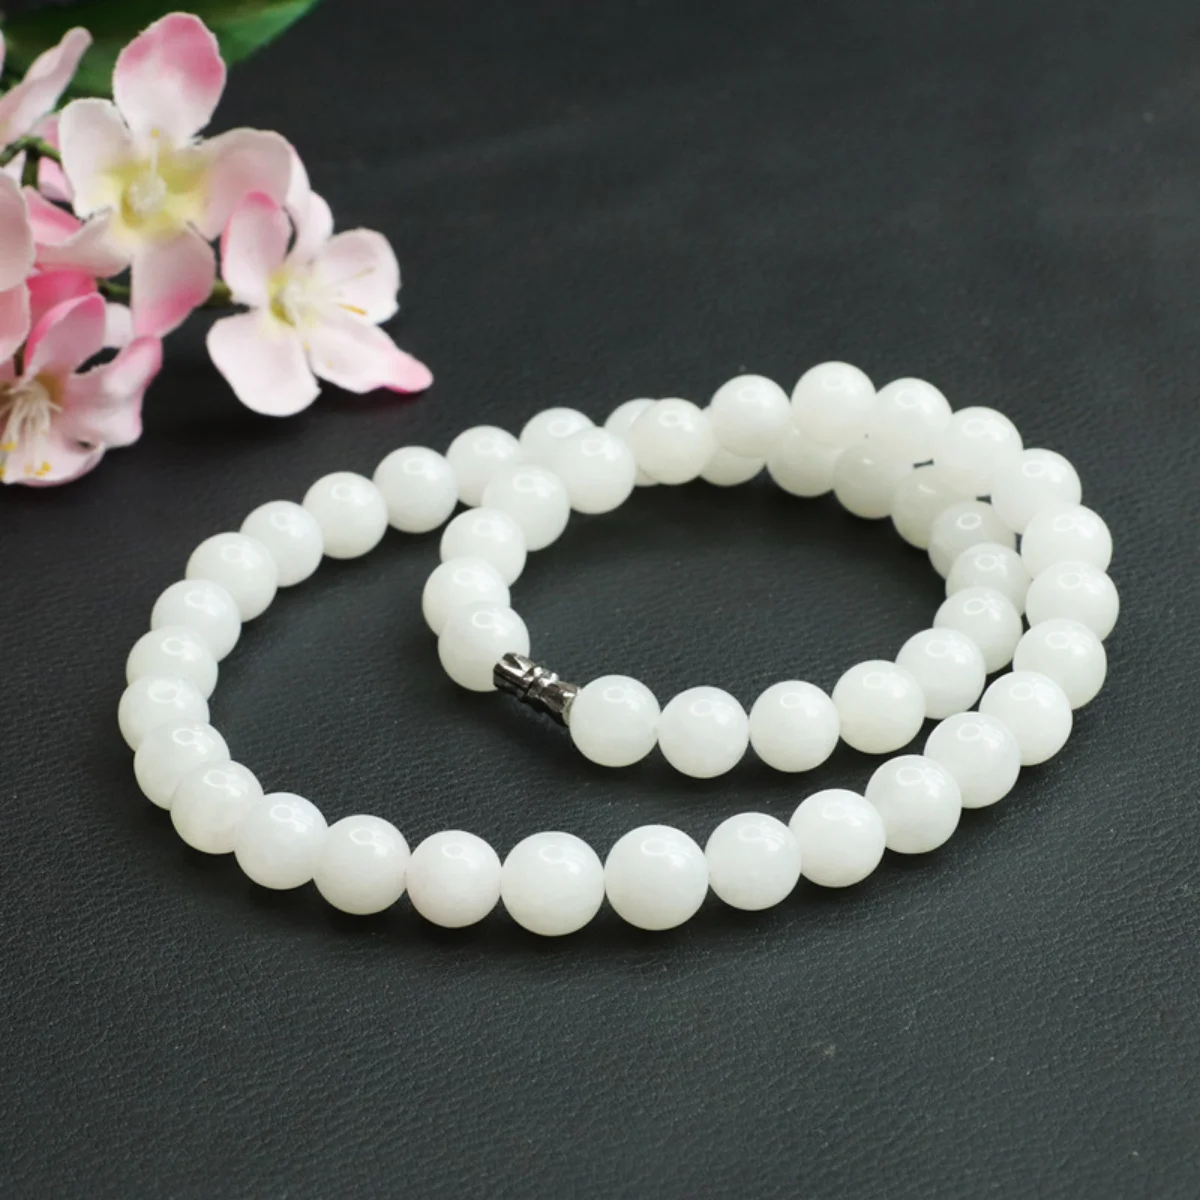 8-10 мм Круглое Молочно-белое халцедоновое ожерелье, цепочка из натурального камня, Ювелирный дизайн, подарки для женщин, одежда для шеи 